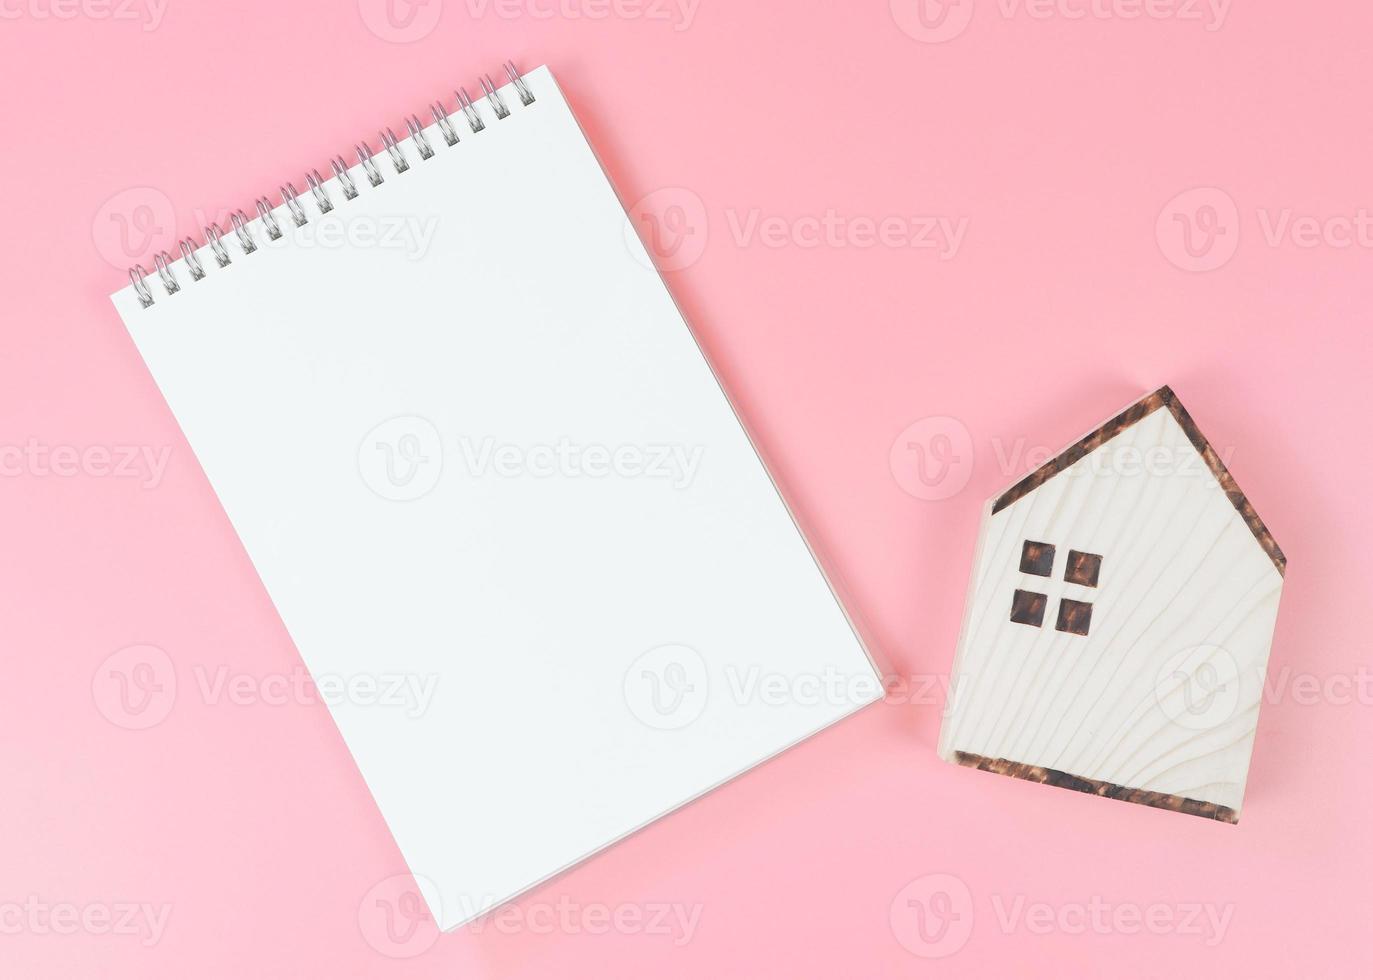 diseño plano de modelo de casa de madera y cuaderno de página en blanco sobre fondo rosa con espacio de copia, concepto de planificación de compra de vivienda. foto